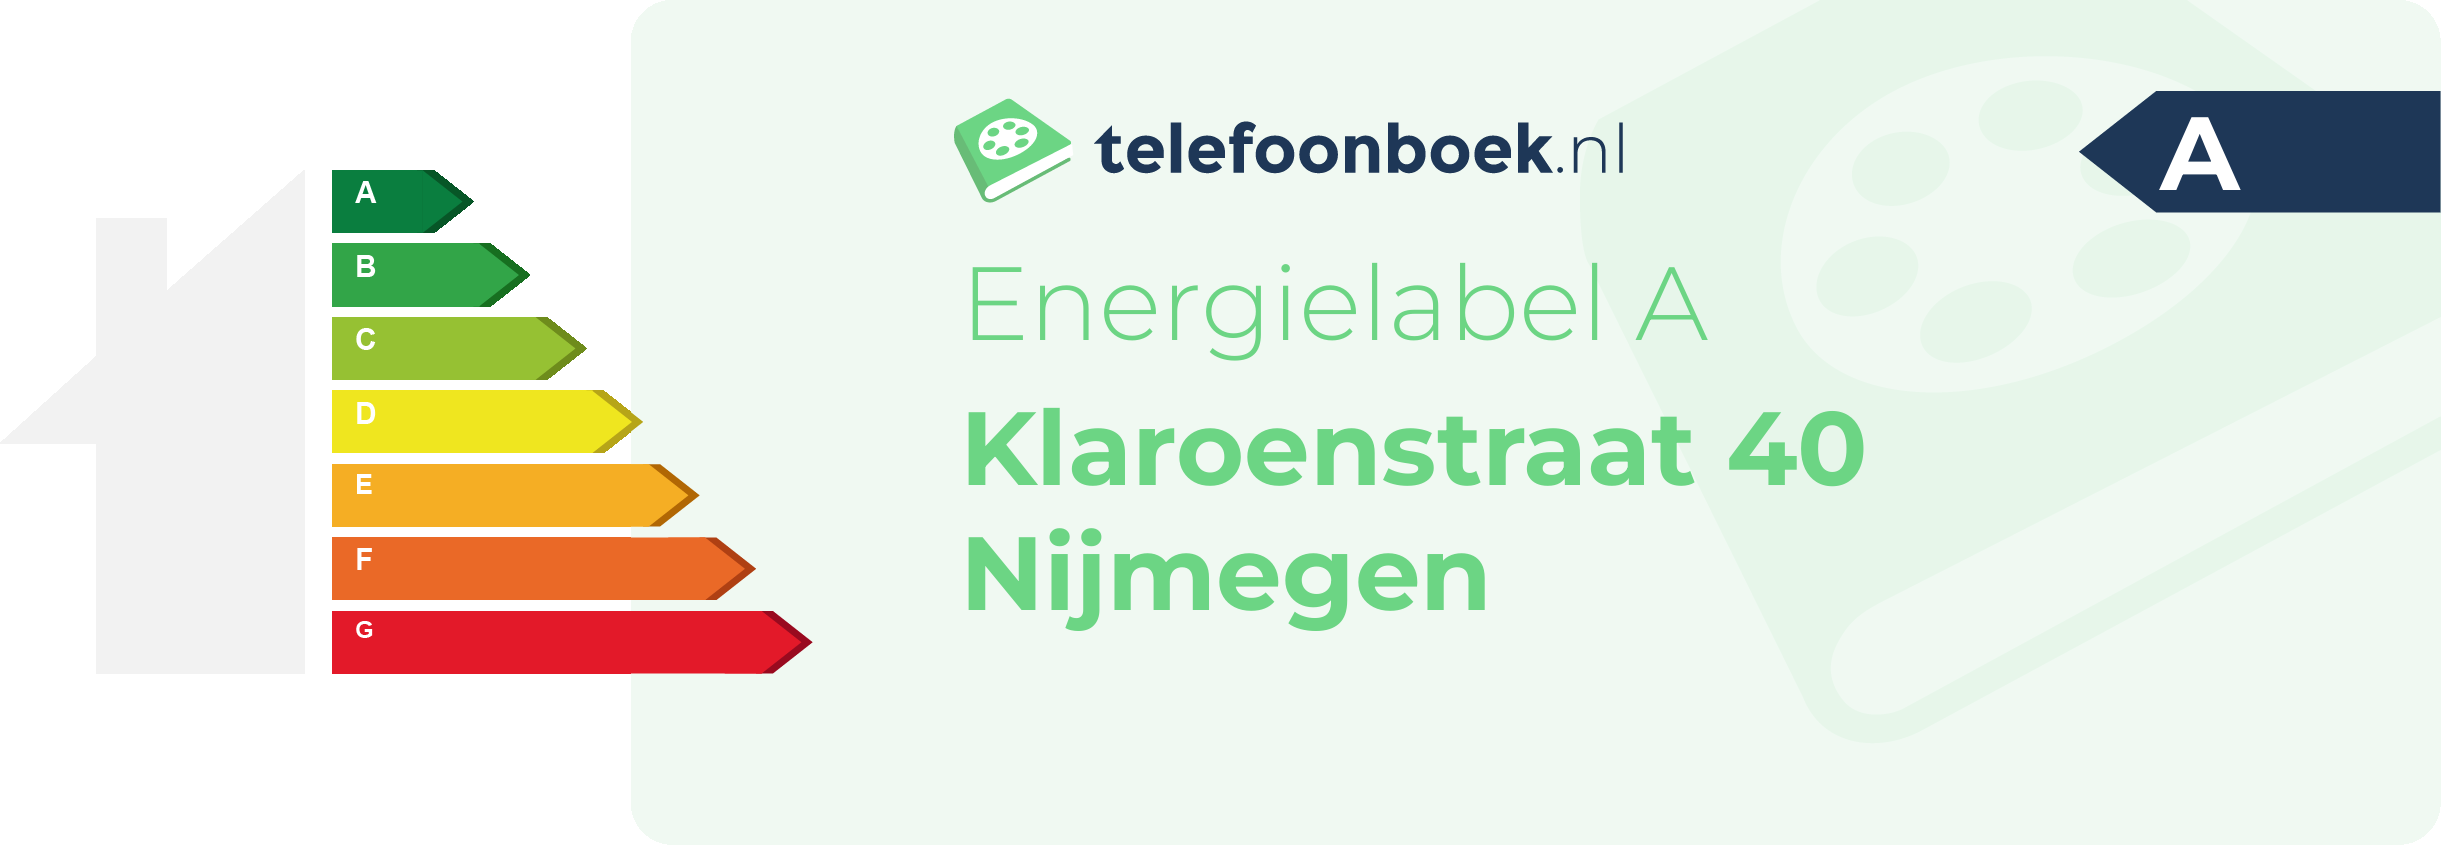 Energielabel Klaroenstraat 40 Nijmegen